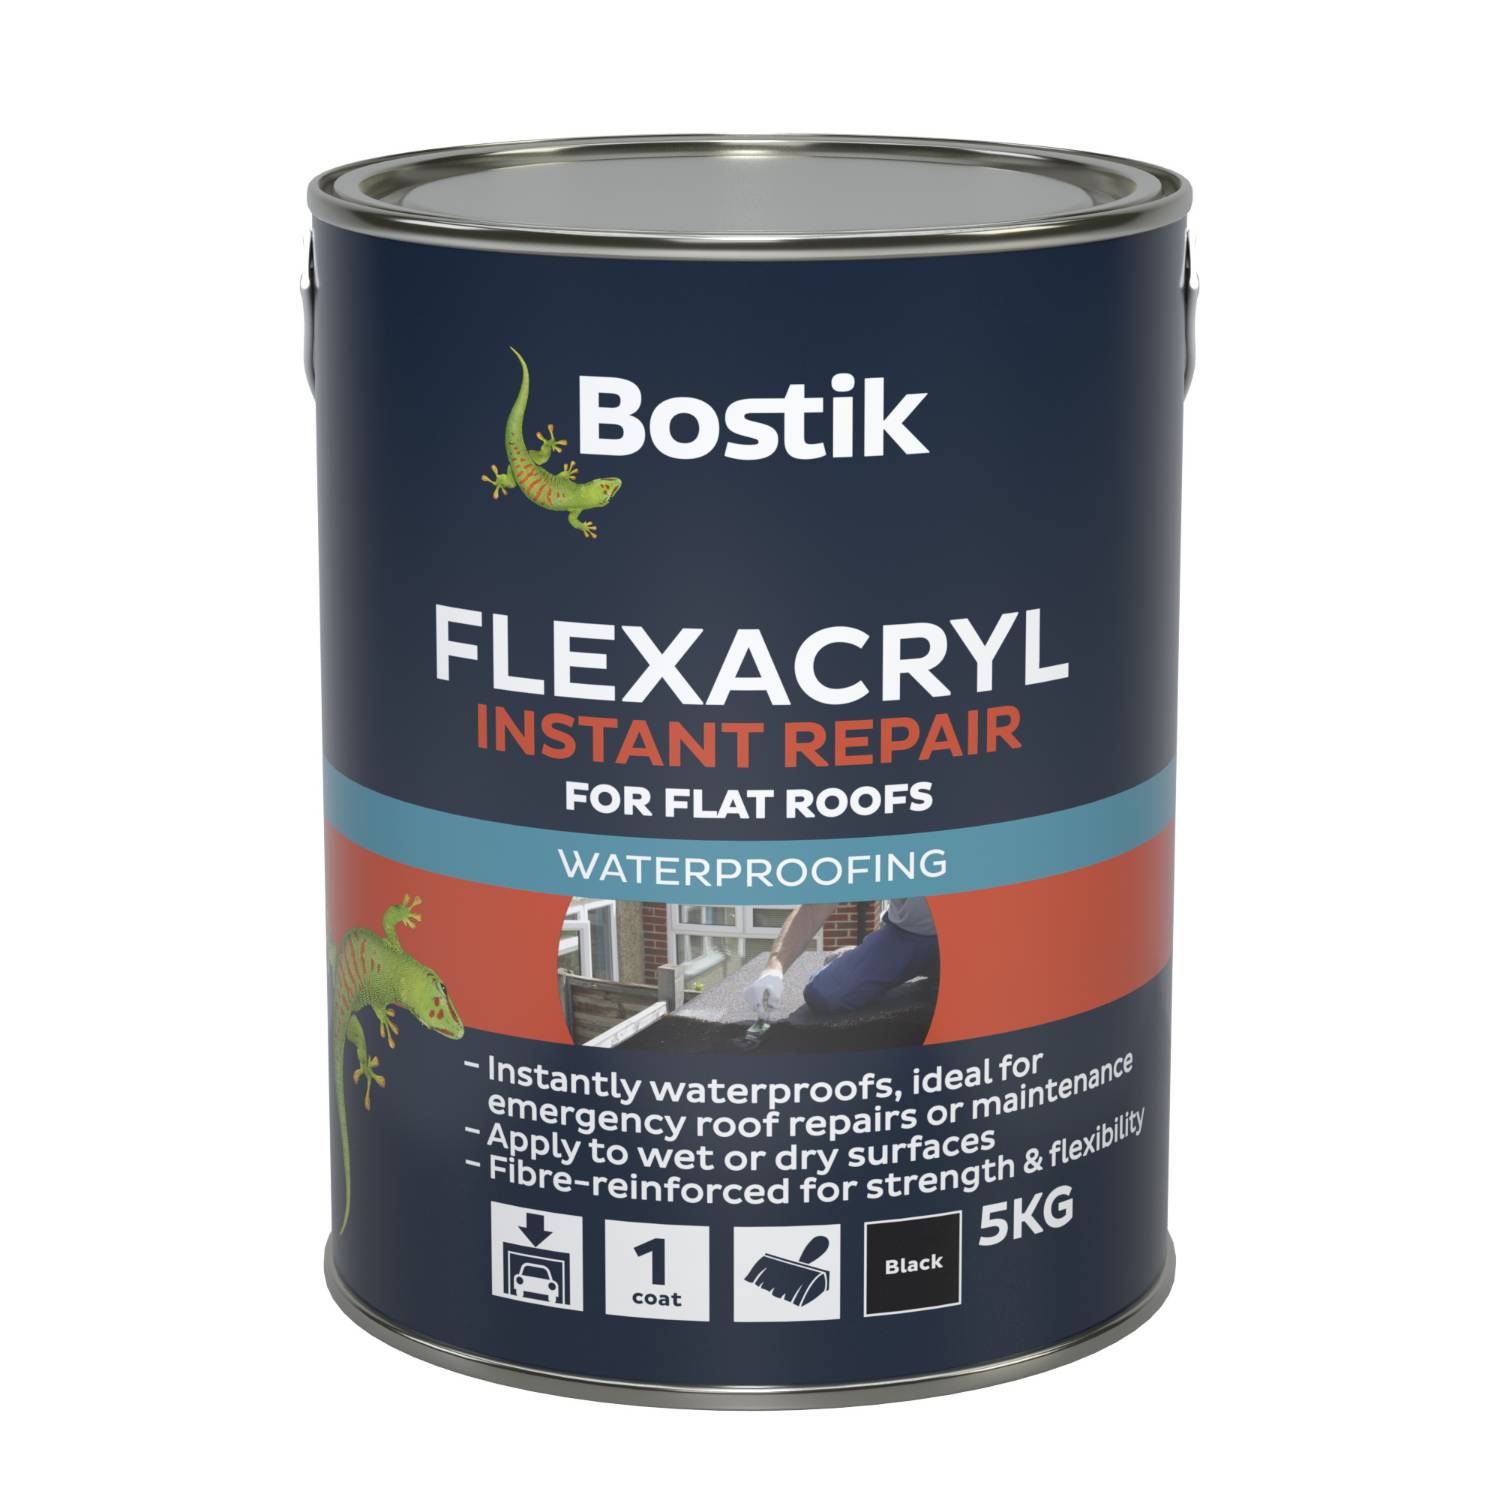 Bostik Flexacryl Instant Repair for Flat Roofs. - Roof waterproofing